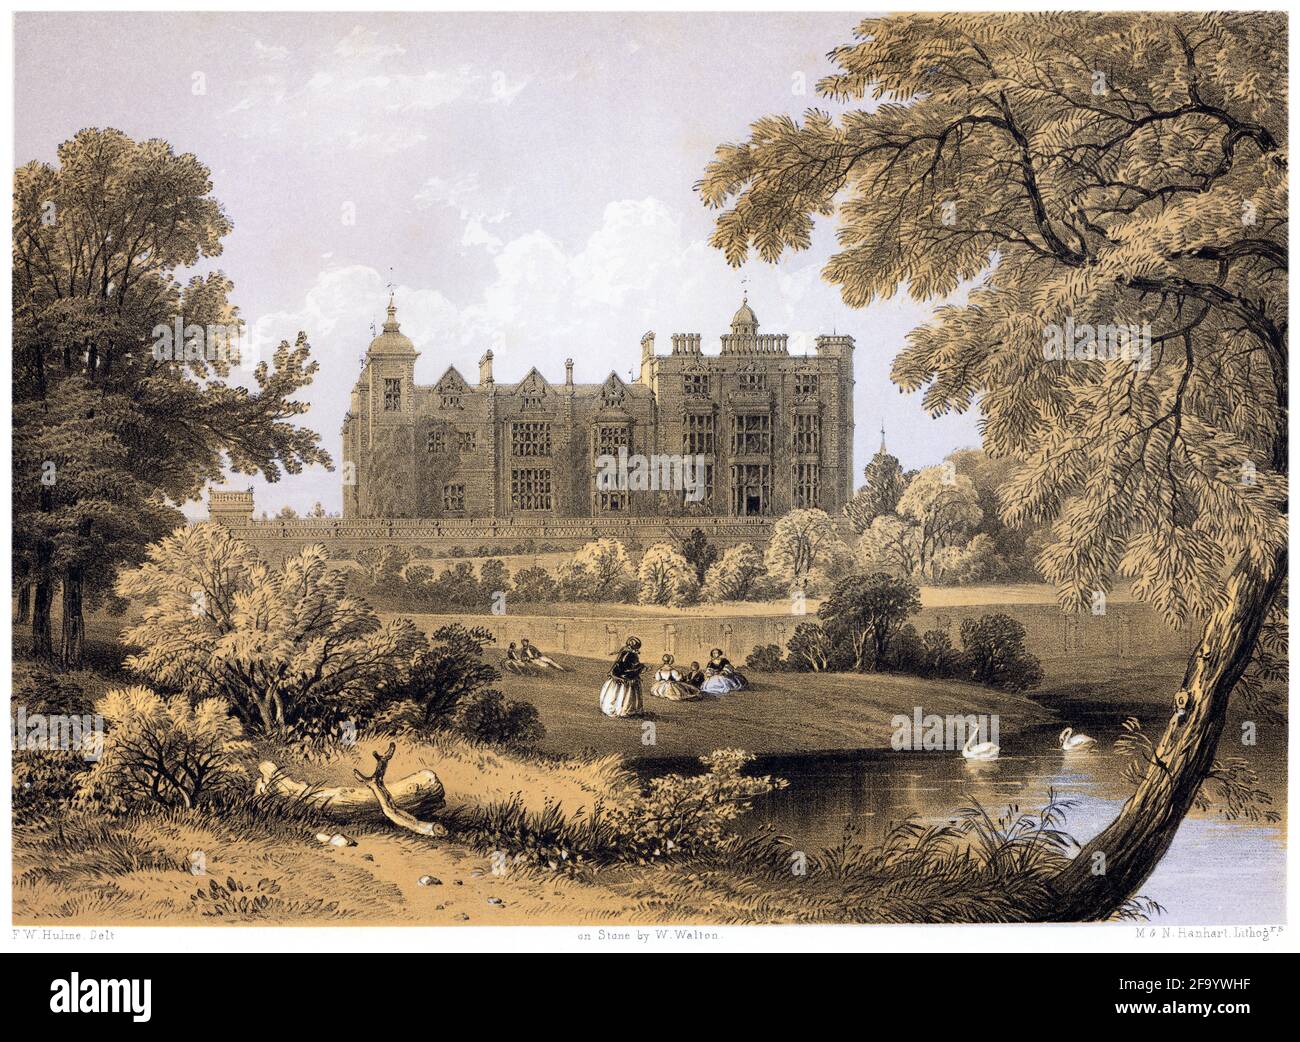 Una litotinta de Hatfield House, Hertfordshire UK escaneada a alta resolución de un libro impreso en 1858. Se cree que los derechos de autor son libres Foto de stock